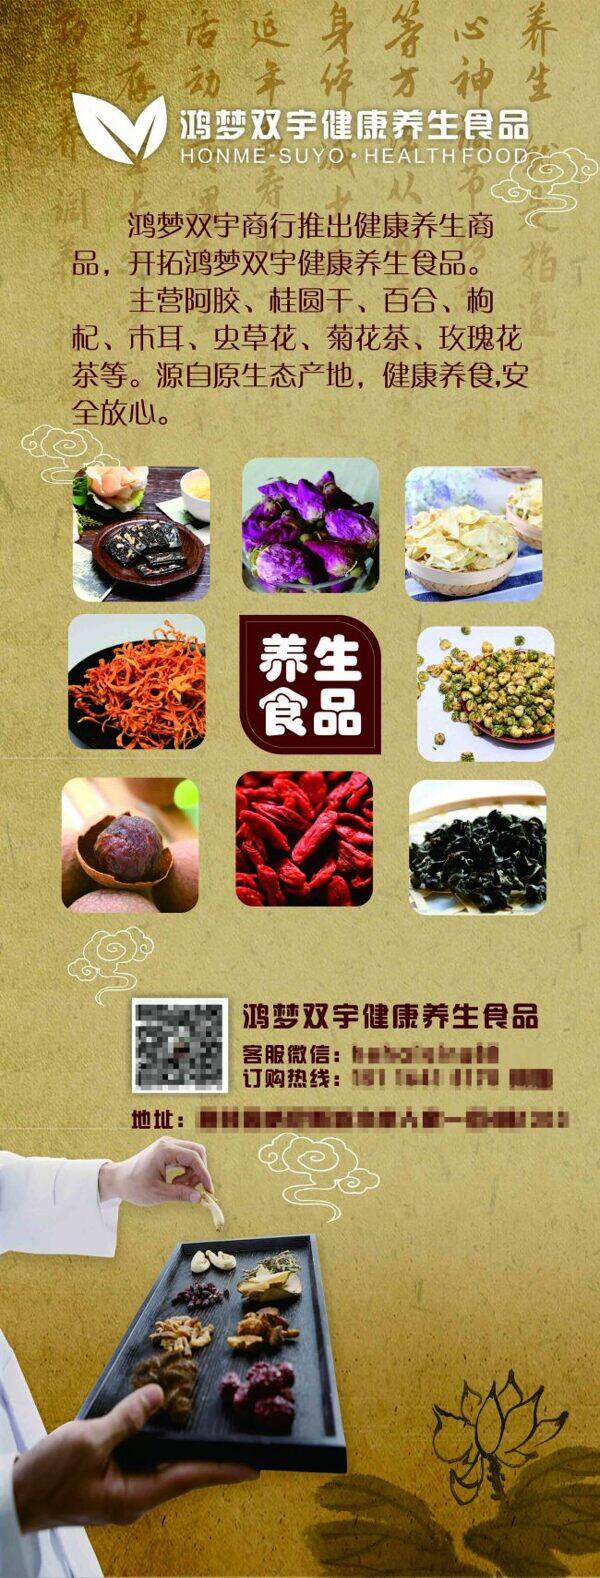 中国风养生食品鸿梦双宇健康养生食品